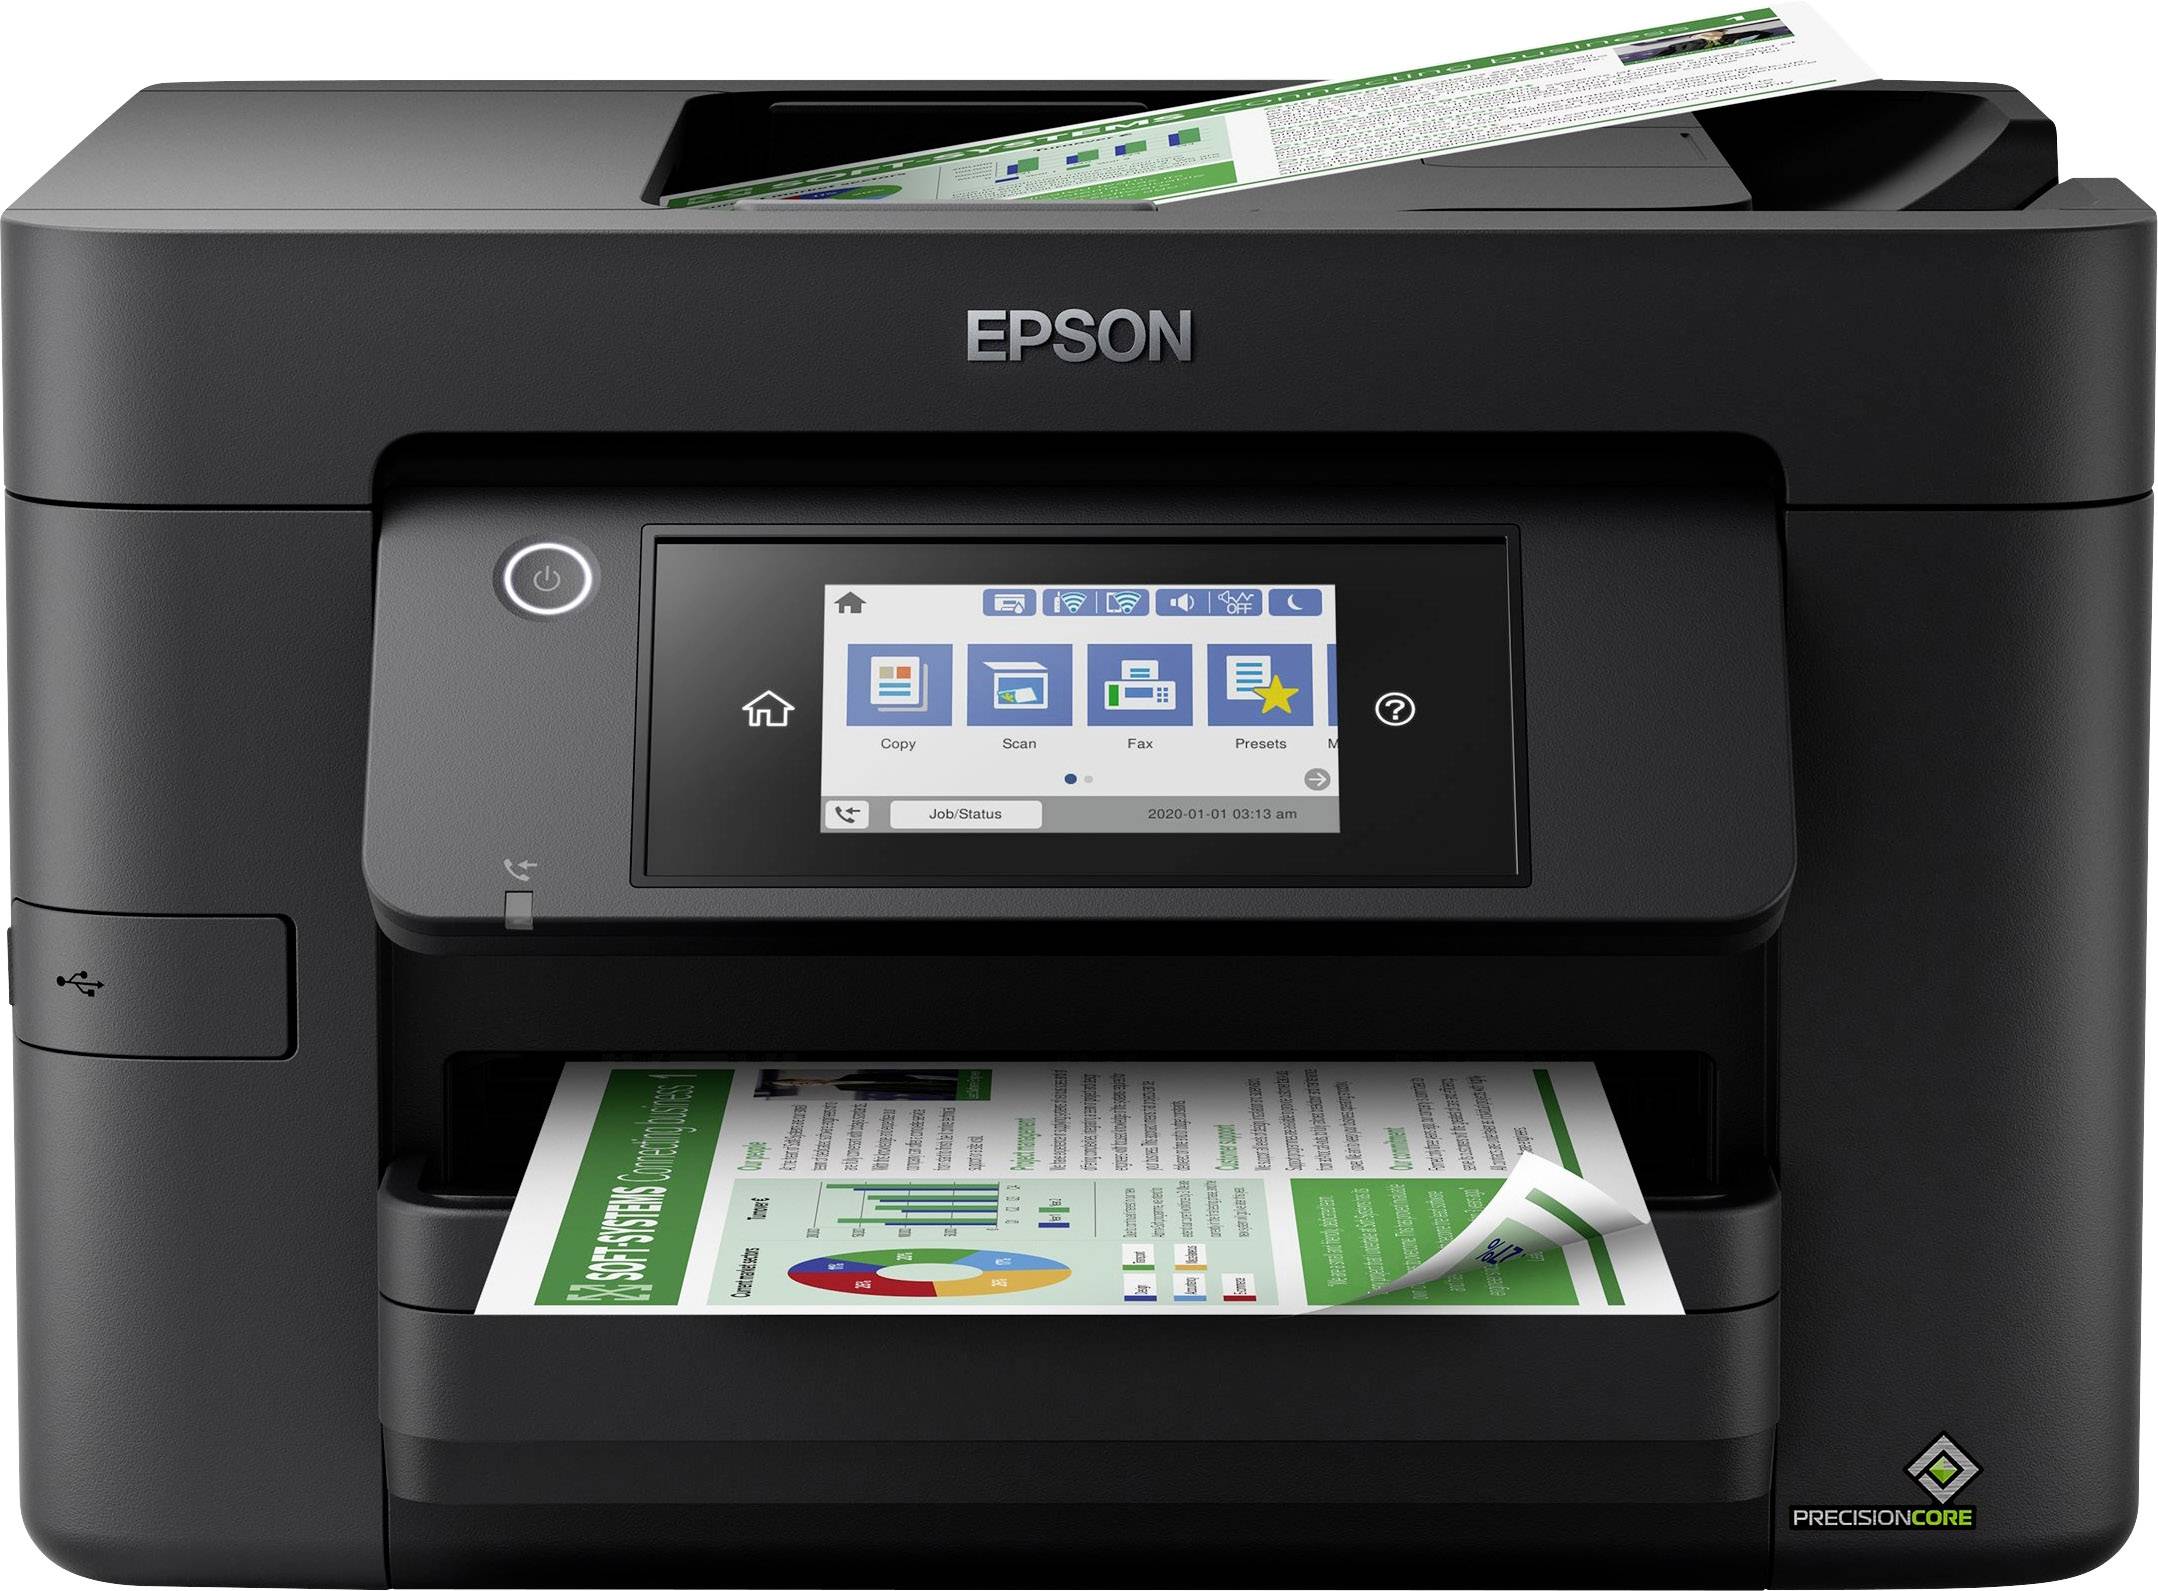 Epson WorkForce Tintenstrahl-Multifunktionsdrucker kaufen A4 Fax Pro LAN, Drucker, WF-4820DWF Kopierer, Scanner, Duplex, USB